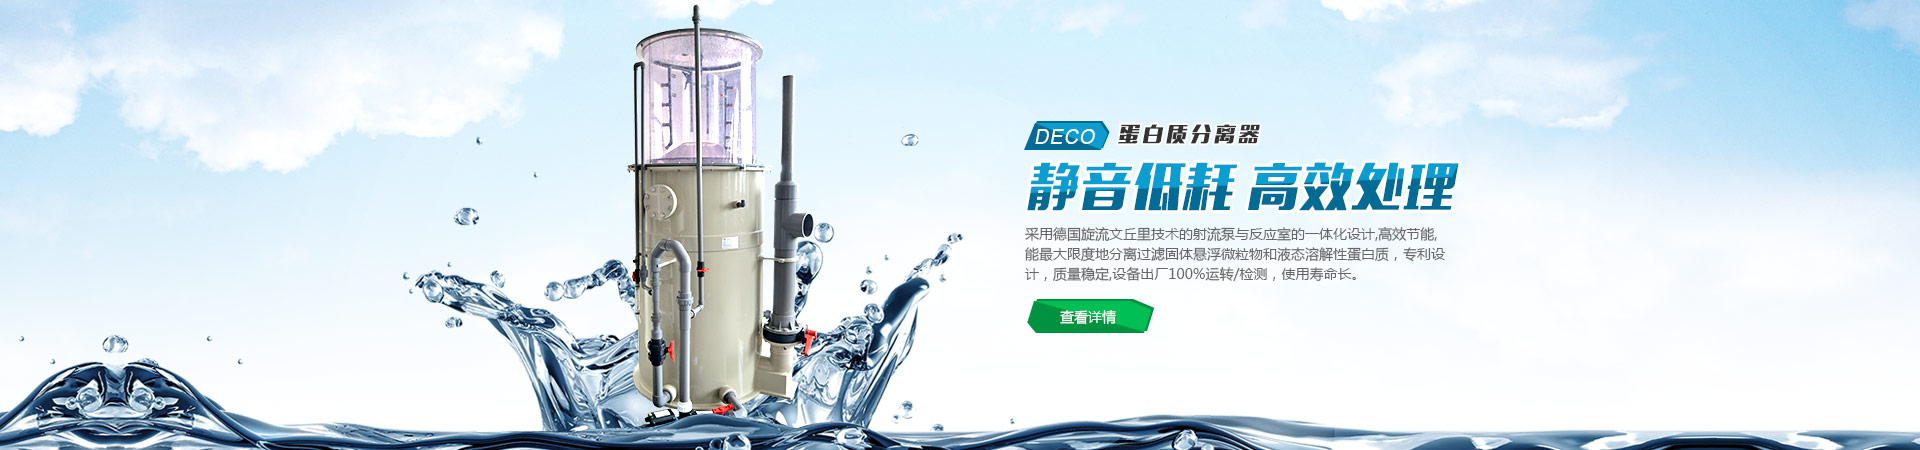 上海欧士通机电设备有限公司